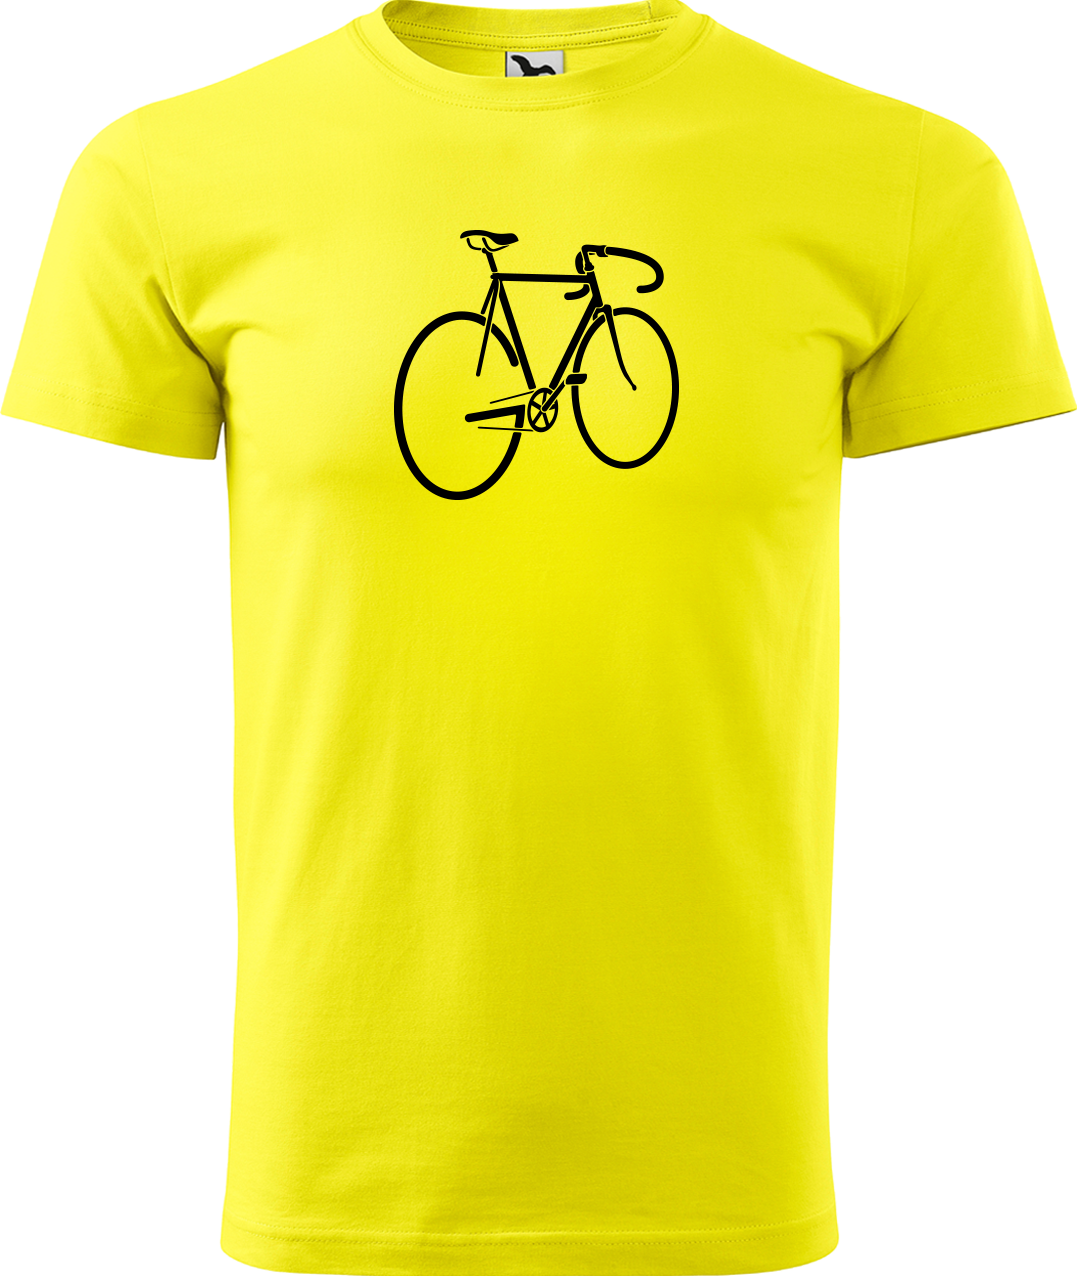 Pánské tričko s kolem - Pánské kolo Velikost: XL, Barva: Žlutá (04)